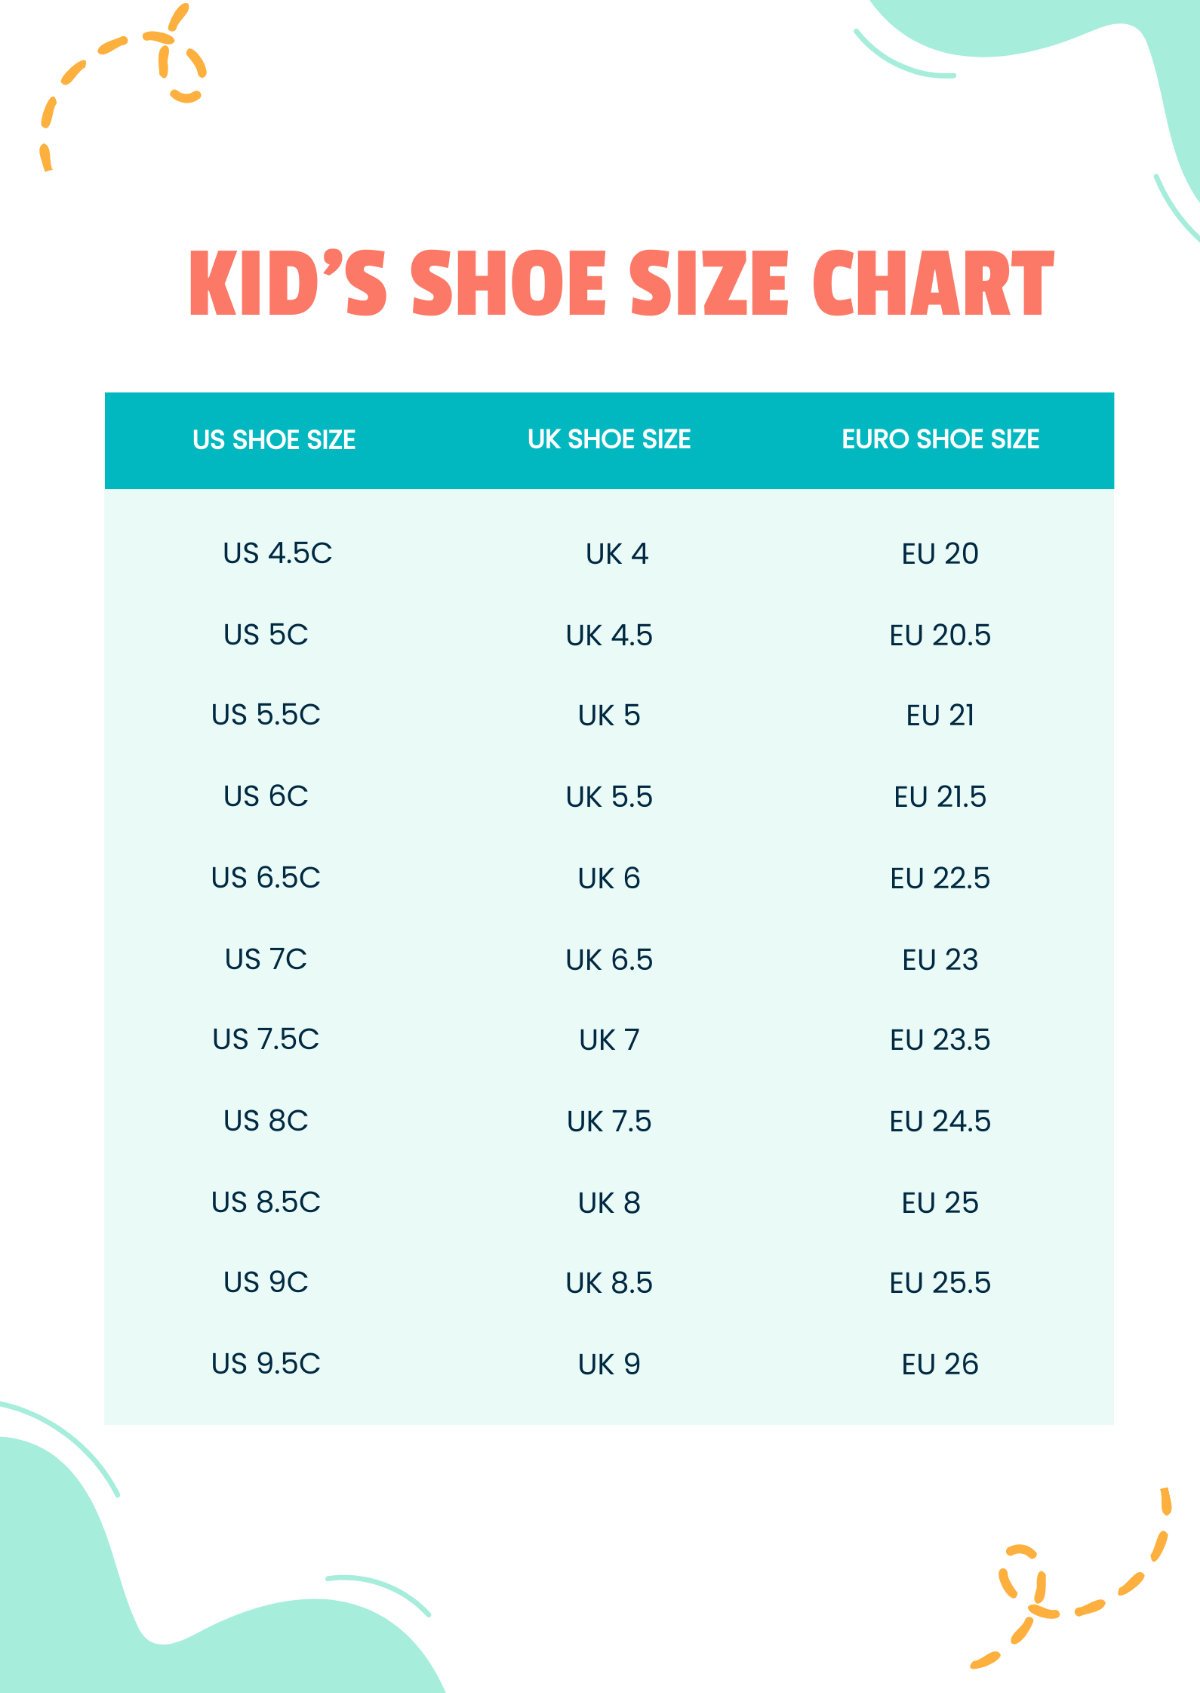 Kids' Shoe Size Chart